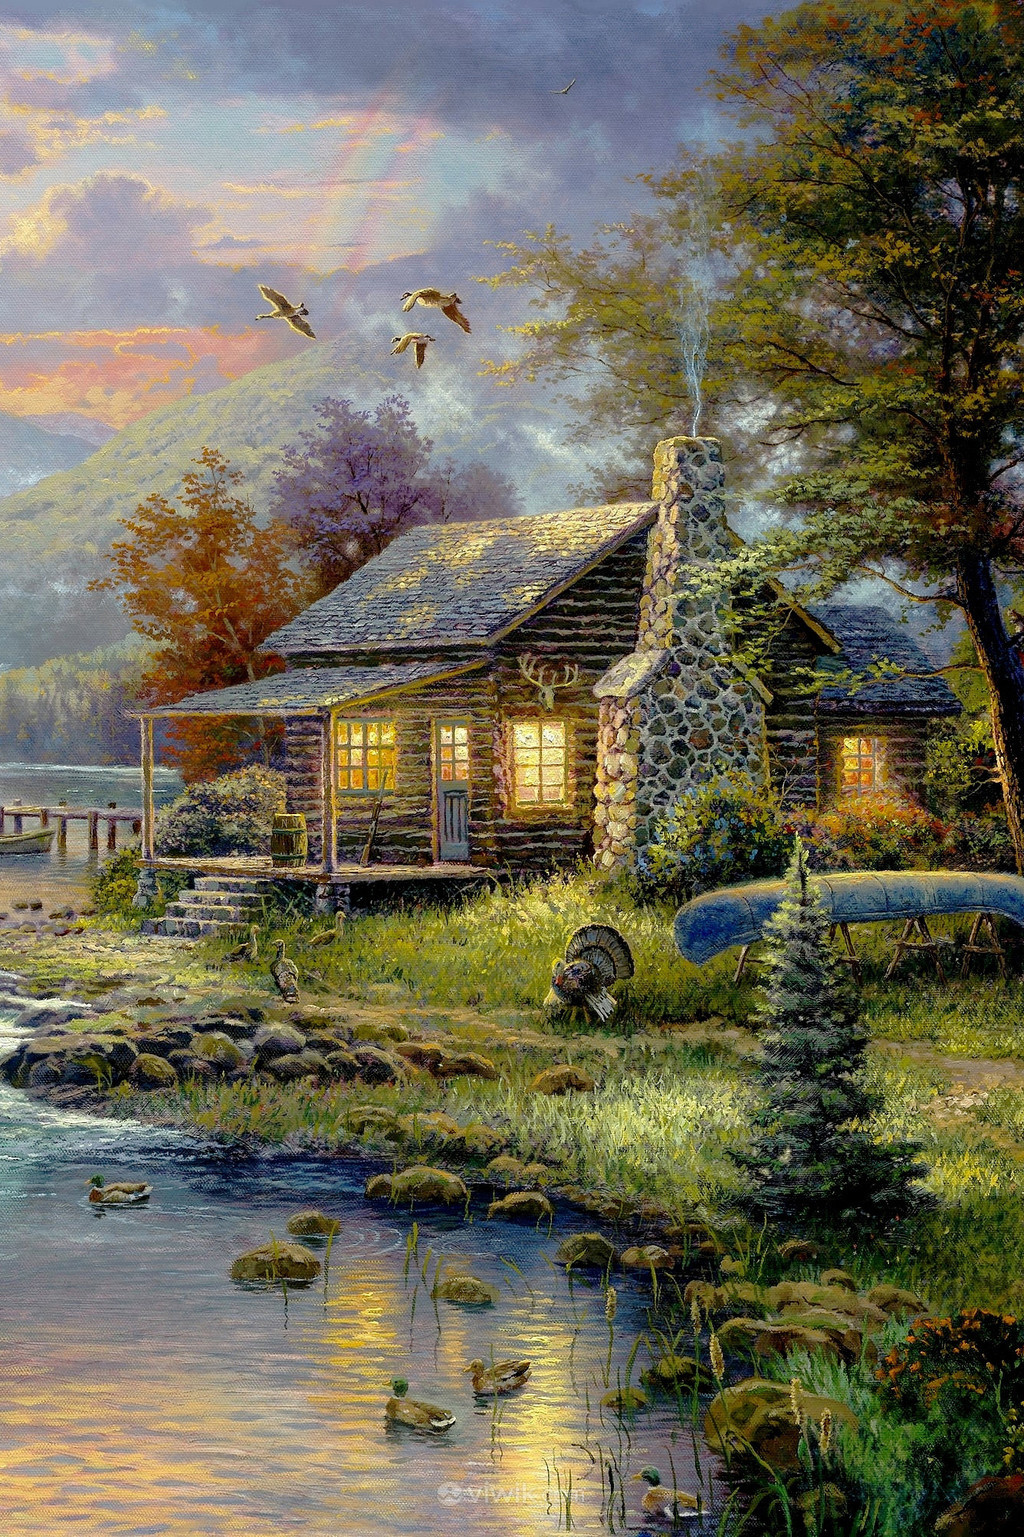 河畔小屋风景油画图片